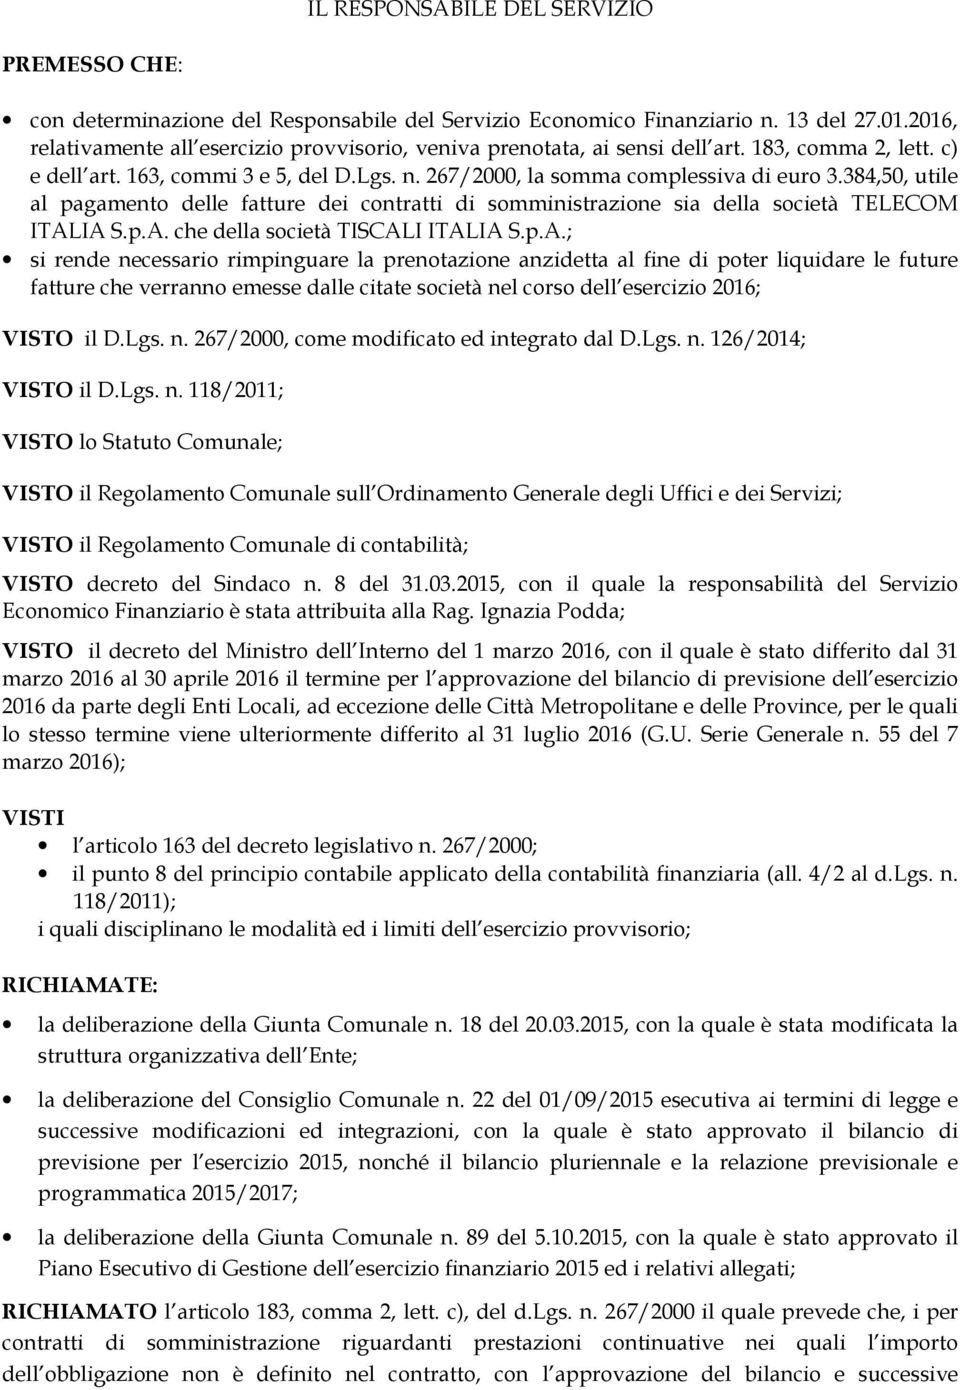 384,50, utile al pagamento delle fatture dei contratti di somministrazione sia della società TELECOM ITAL